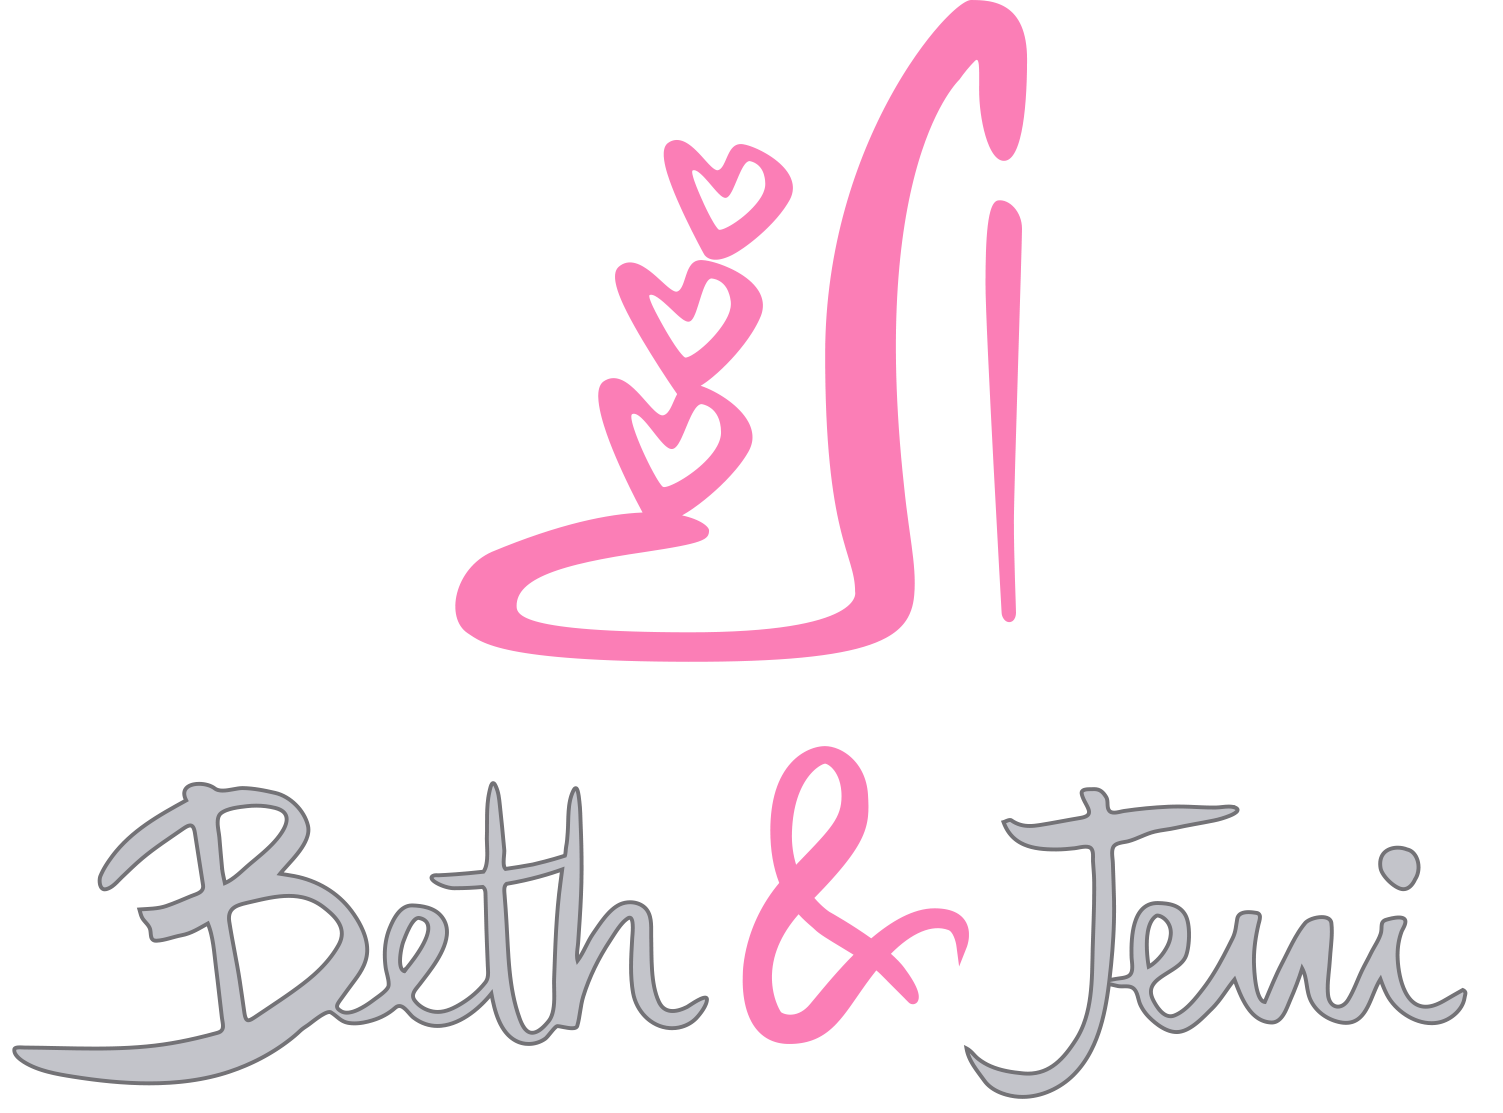 Beth y Jeni